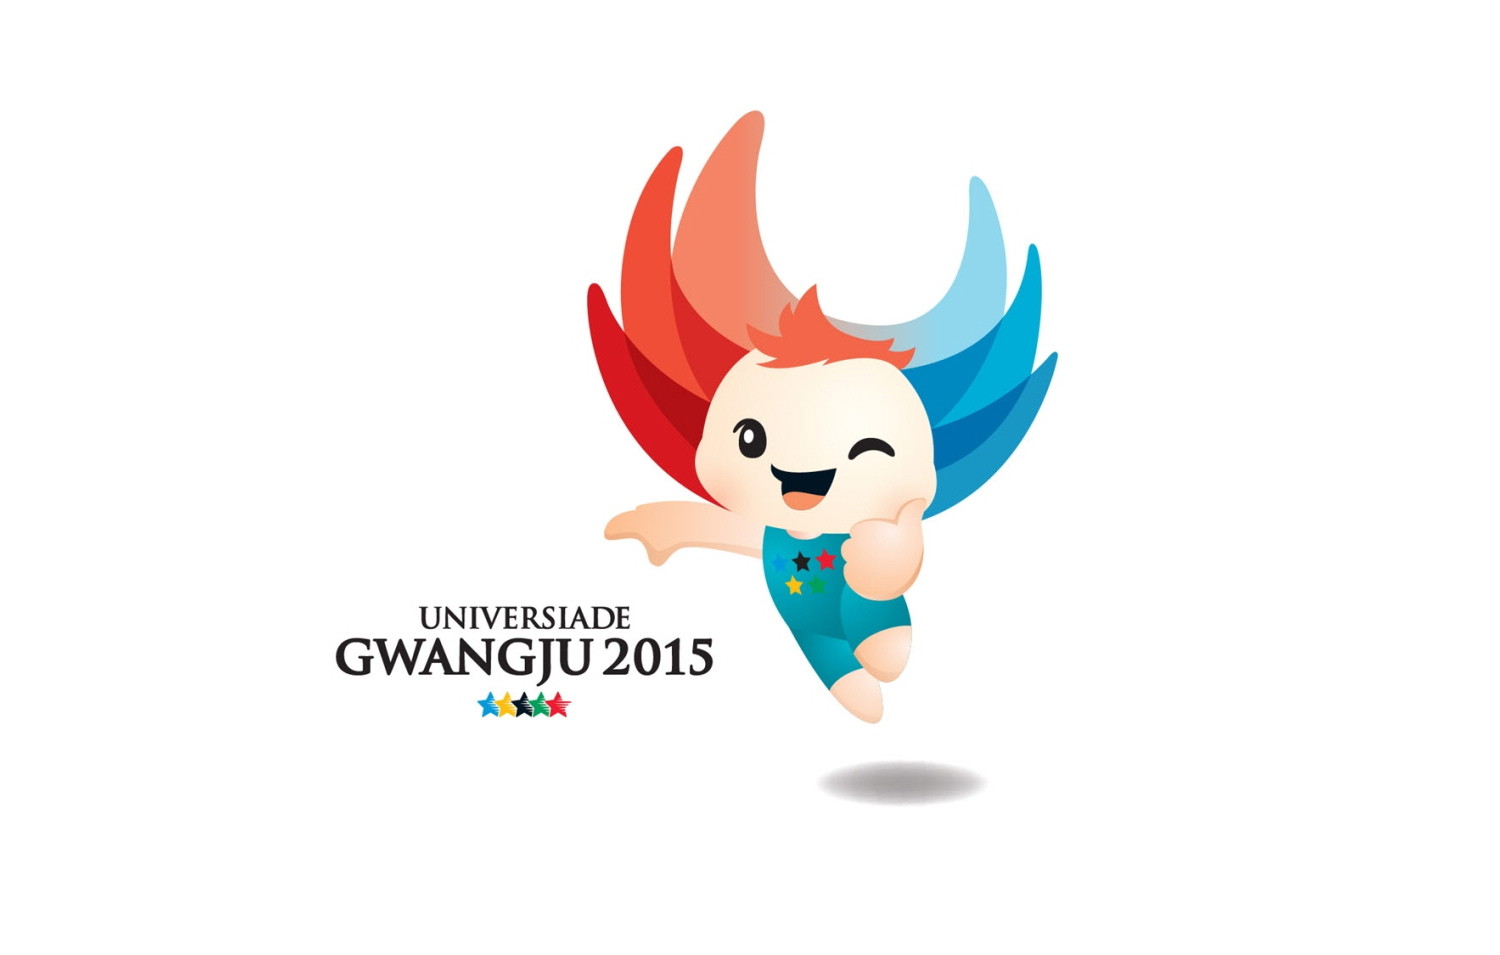 /immagini/Judo/2015/universiade gwangju 2015_0.jpg